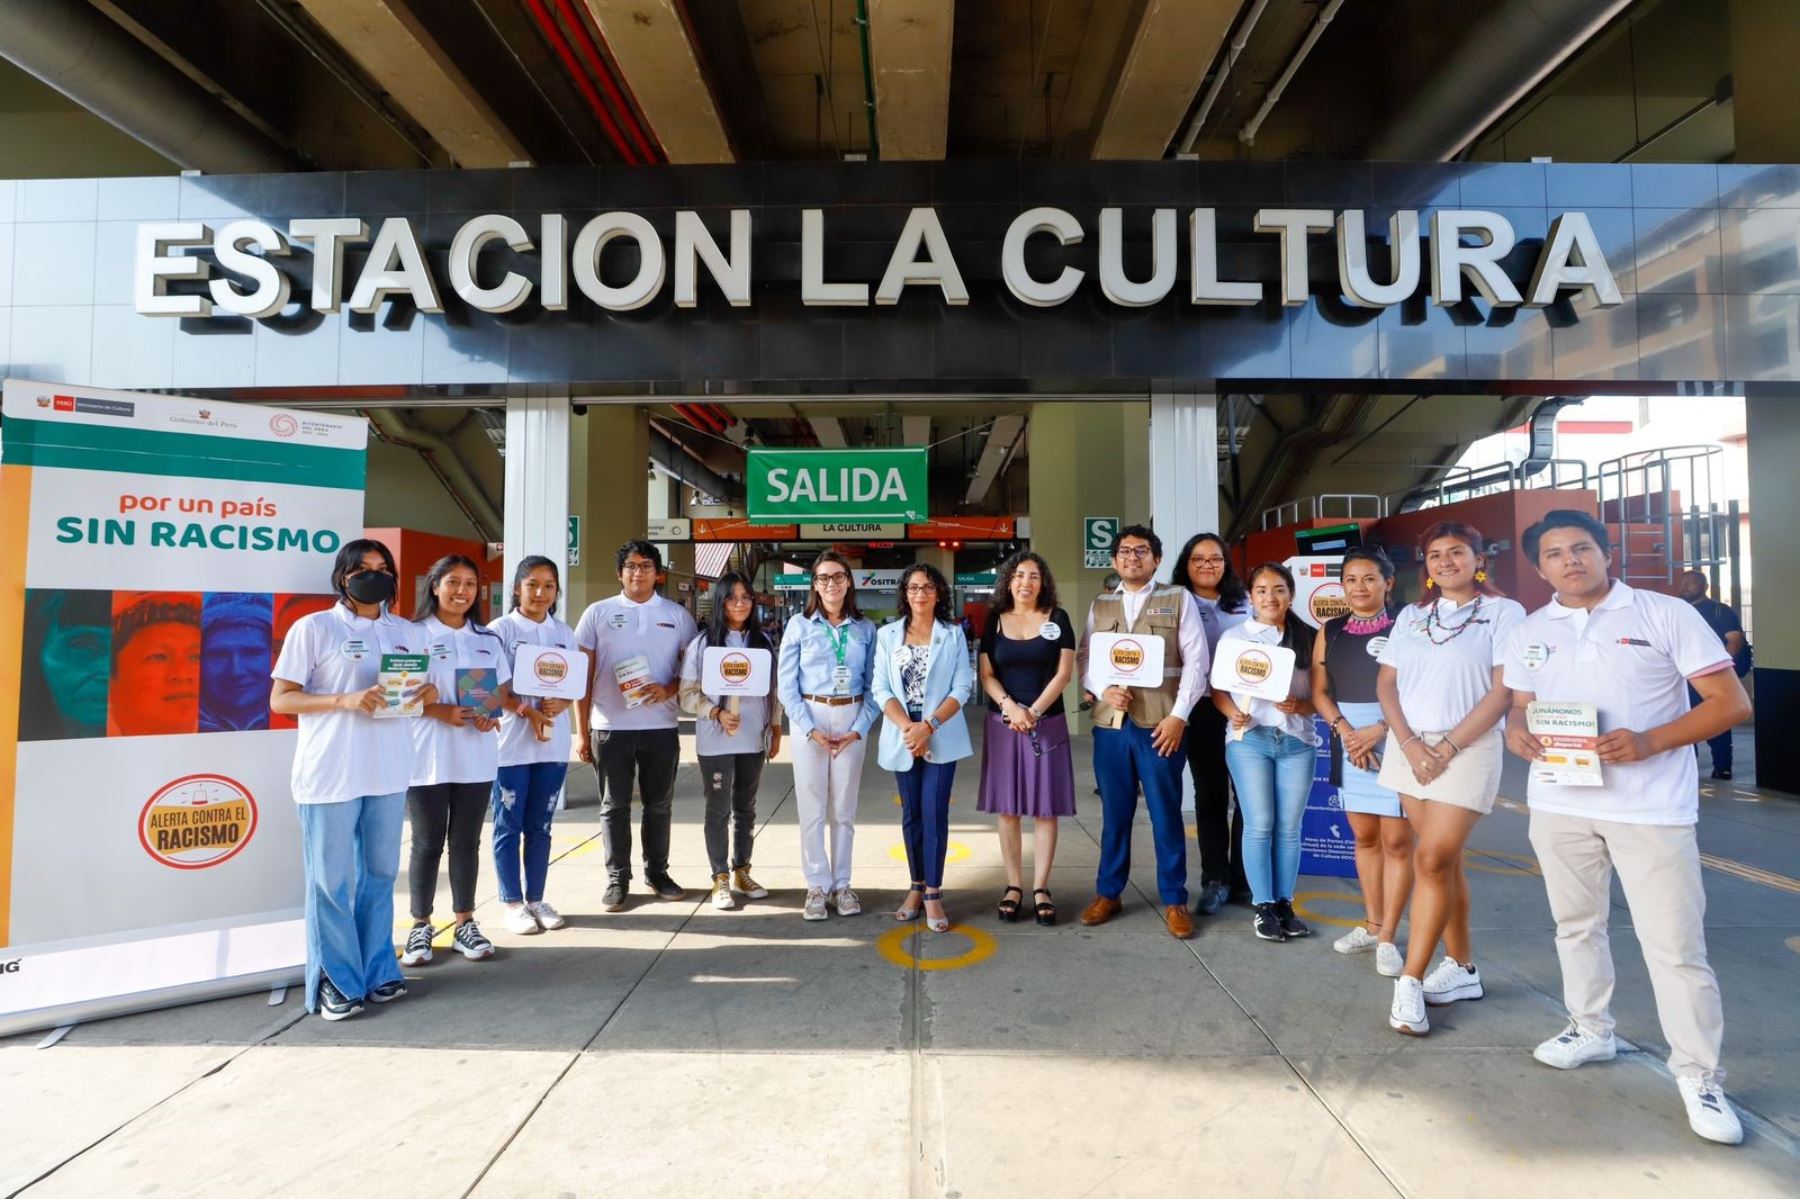 El Ministerio de Cultura realizó una campaña de información y sensibilización contra el racismo en la estación La Cultura de la Línea 1. Foto: MINCUL/Difusión.